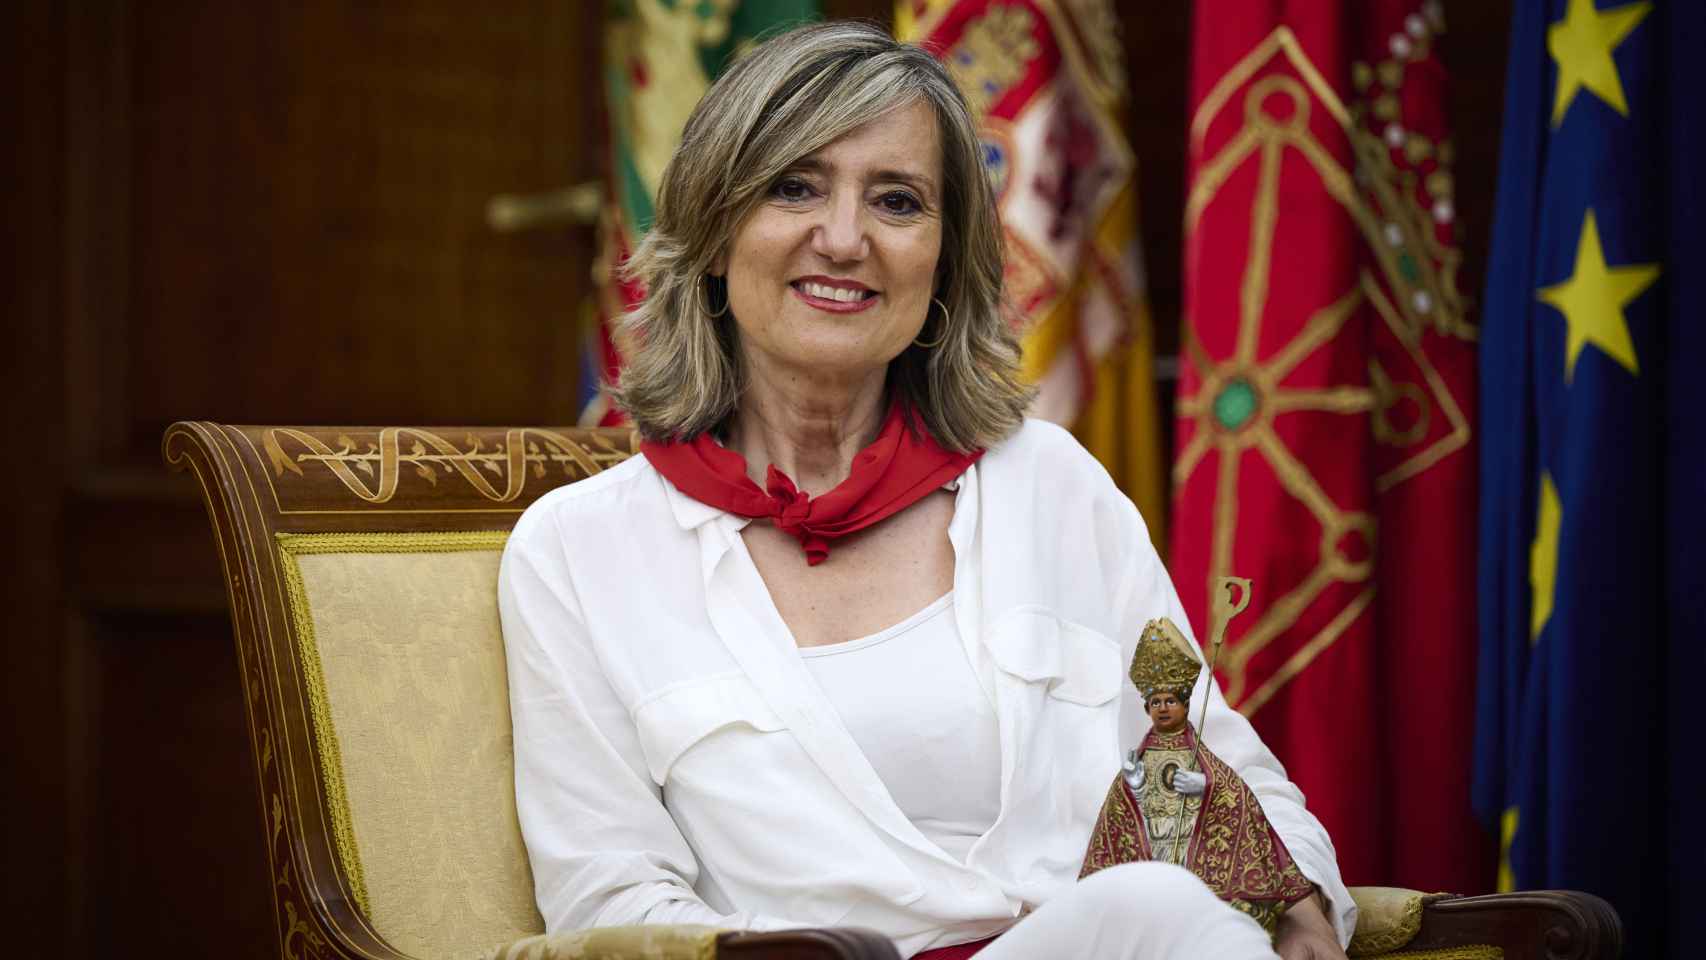 Cristina Ibarrola gobierna Pamplona en minoría. Tendrá que negociara con PSN, Geroa Bai, PP y Podemos. Tiene a Bildu como línea roja.